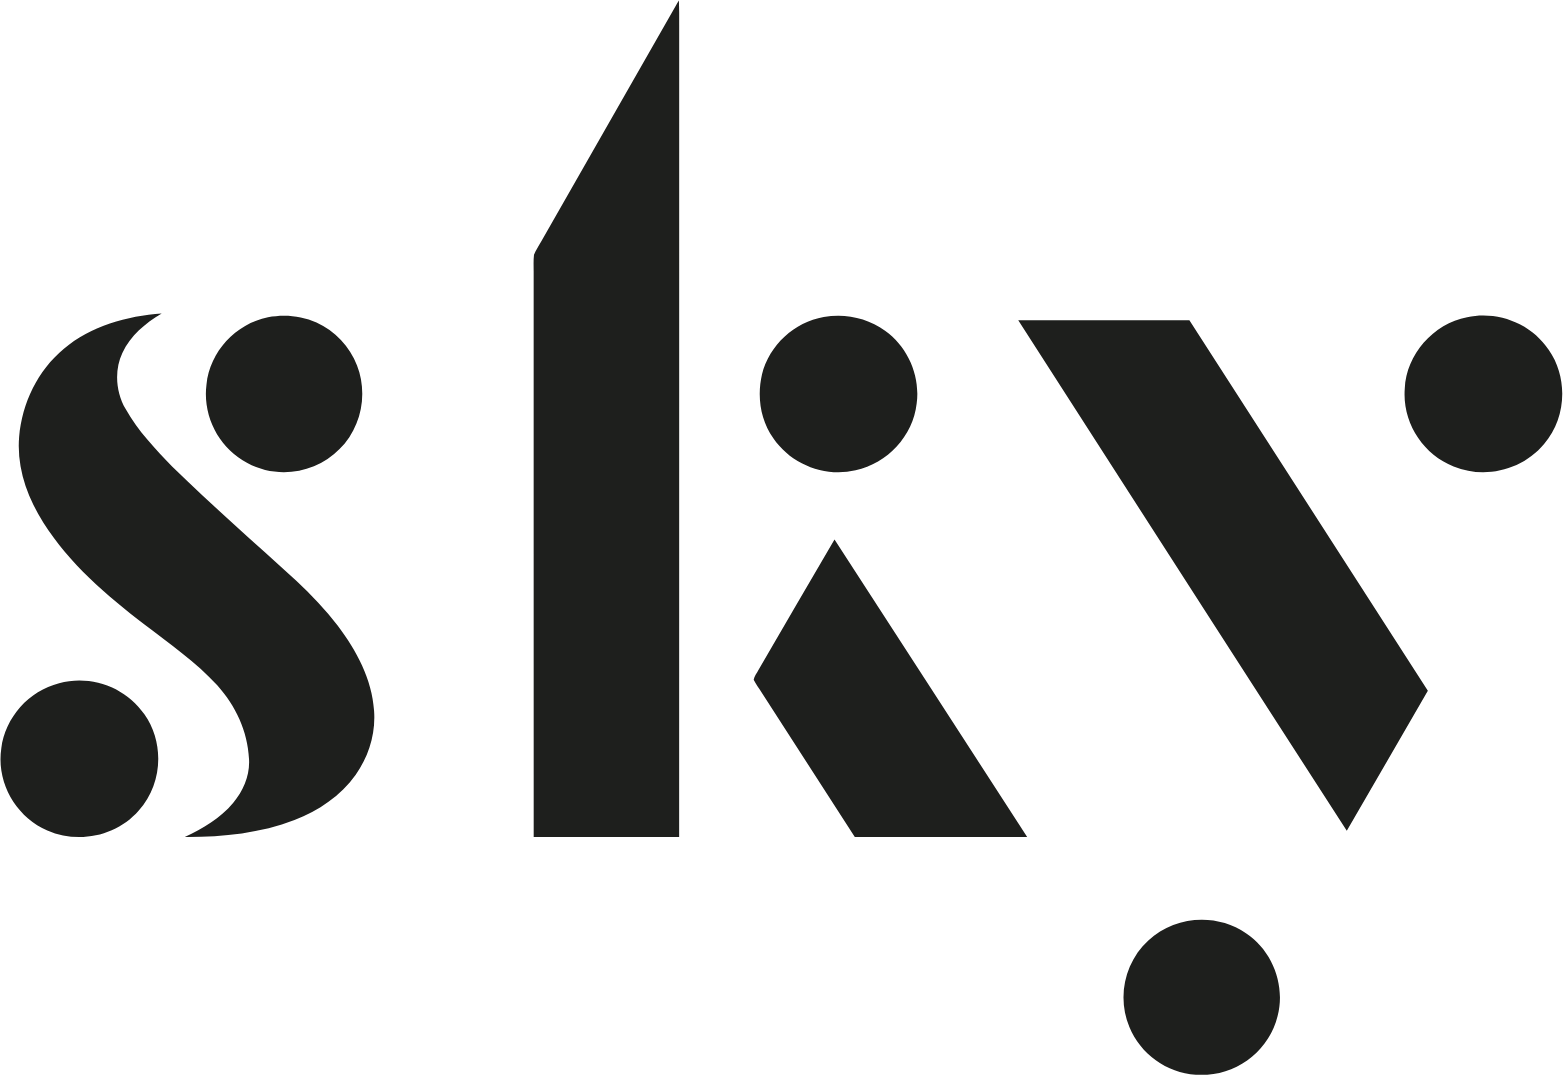 Skycity Entertainment Group logo (PNG transparent)